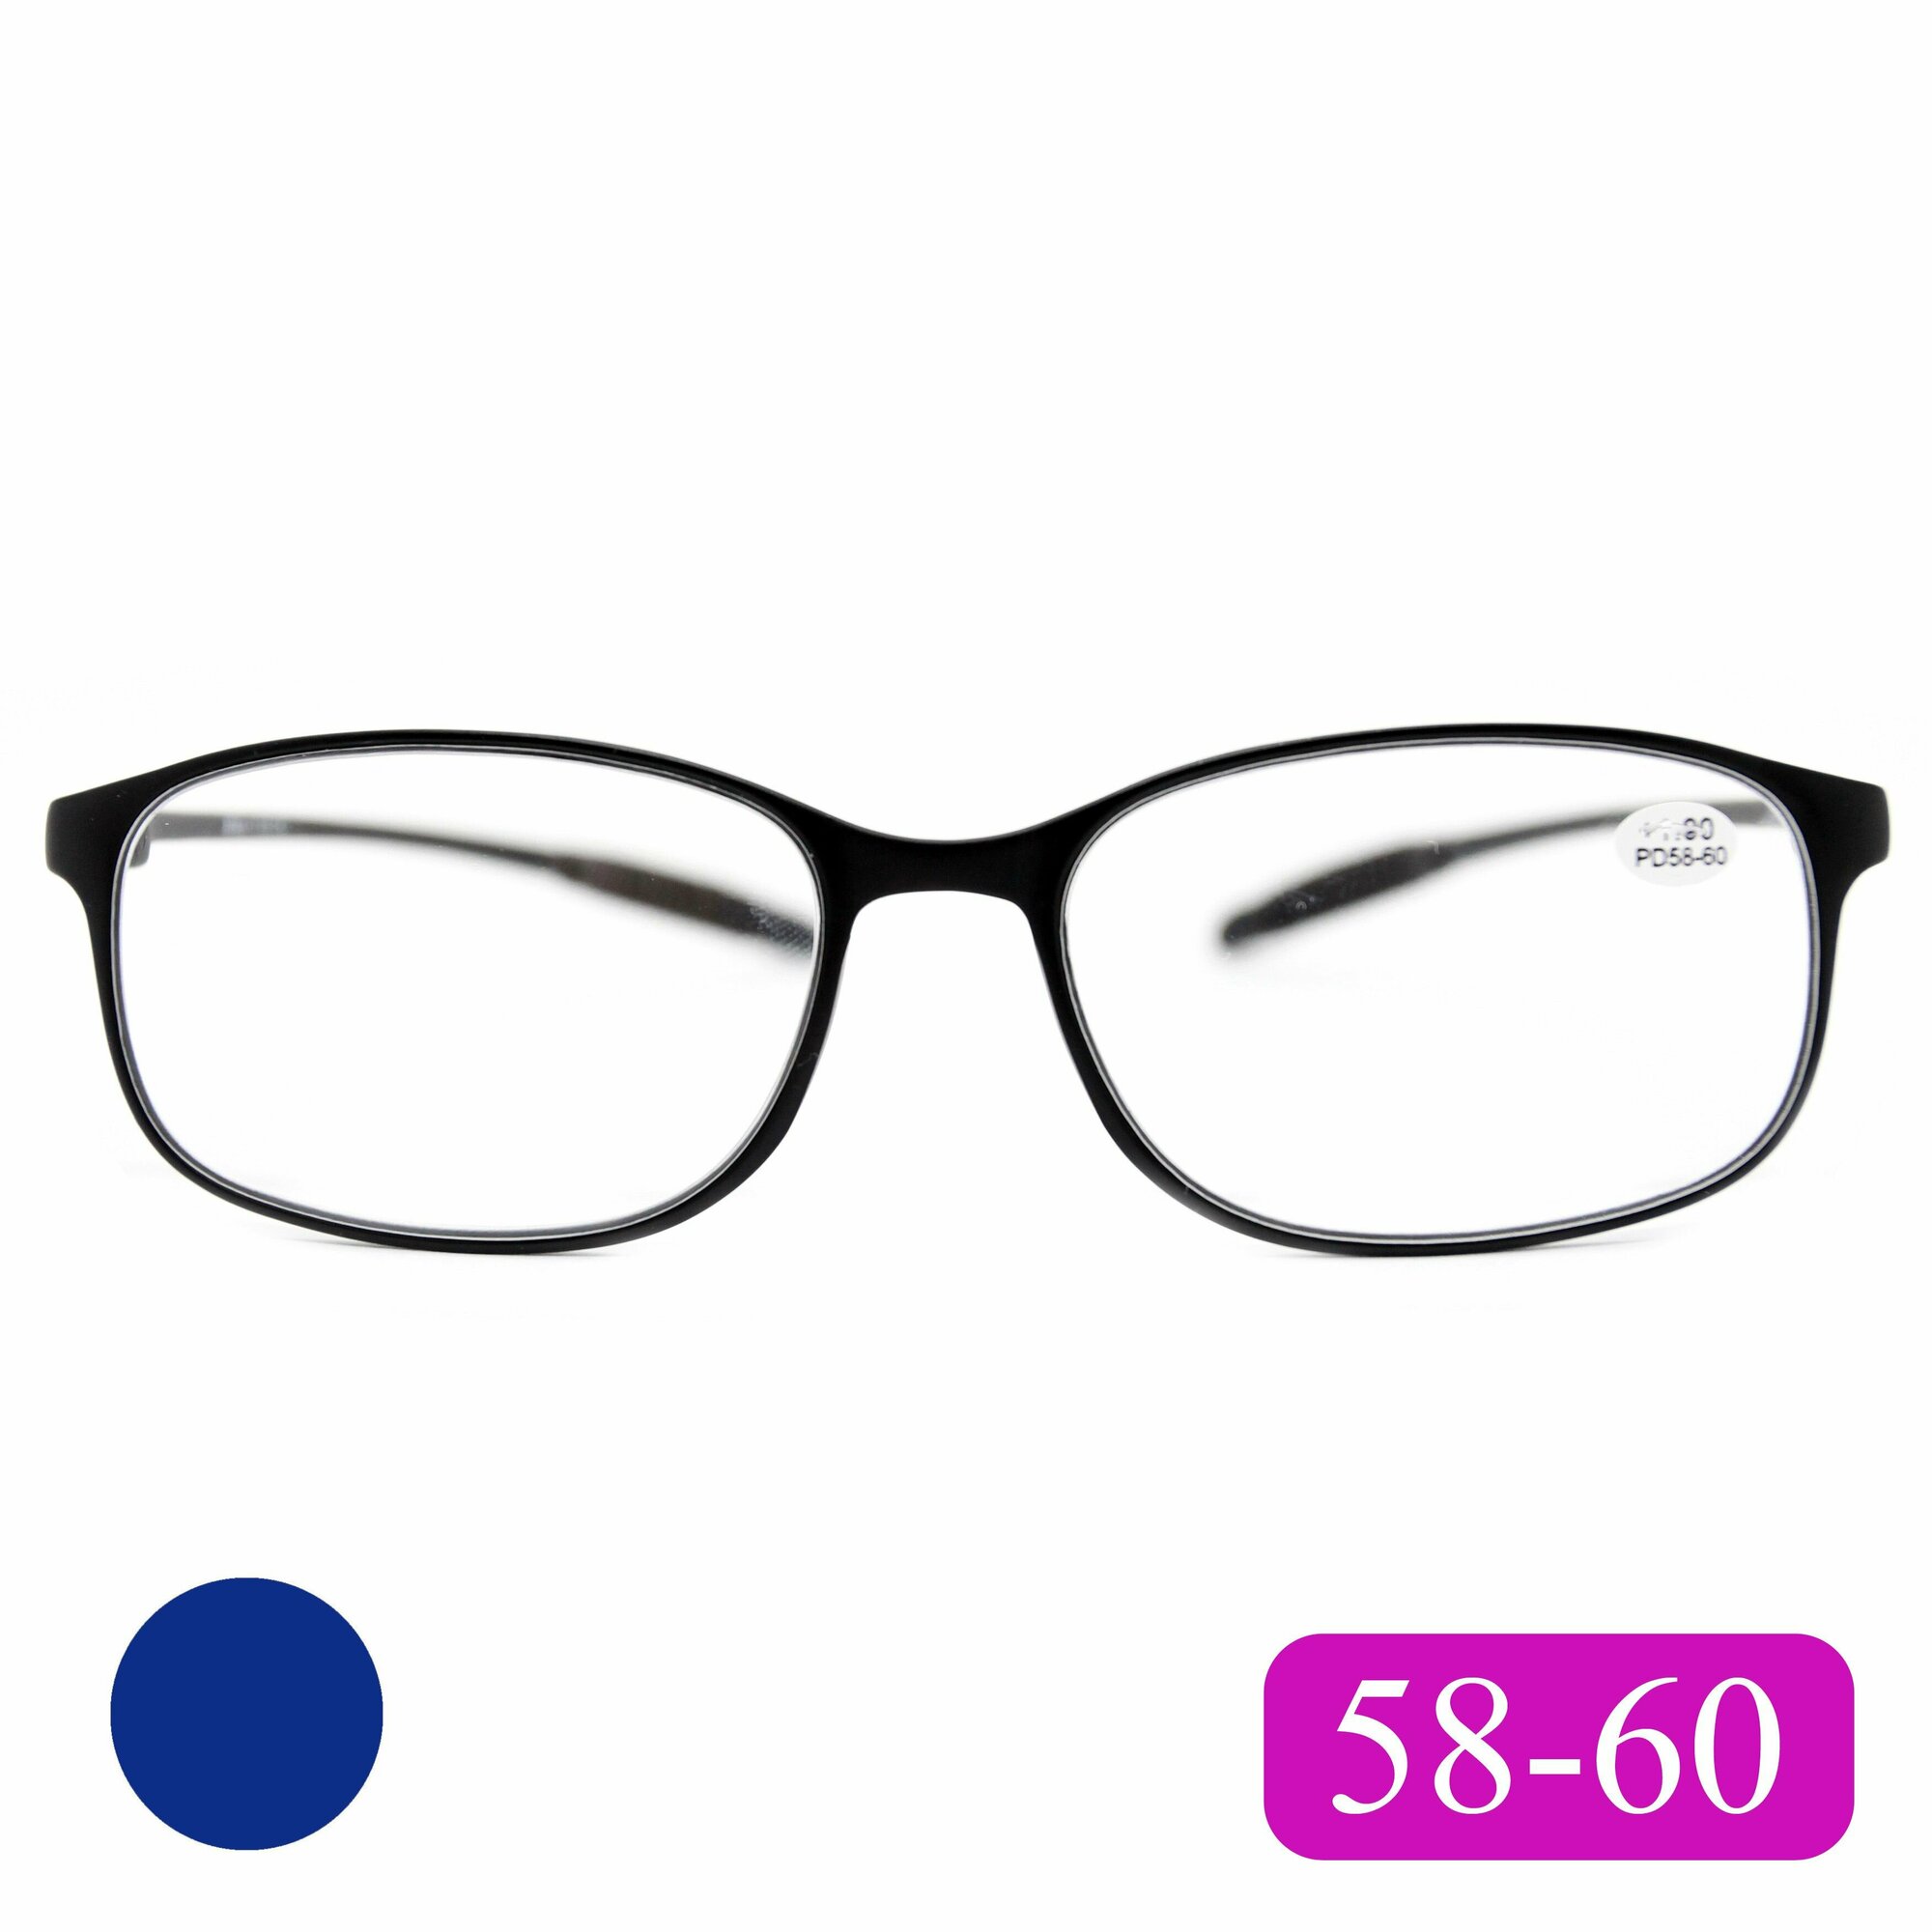 Карбоновые очки для зрения PD 58-60 (+2.75) карбон гриламид, цвет сине-фиолетовый